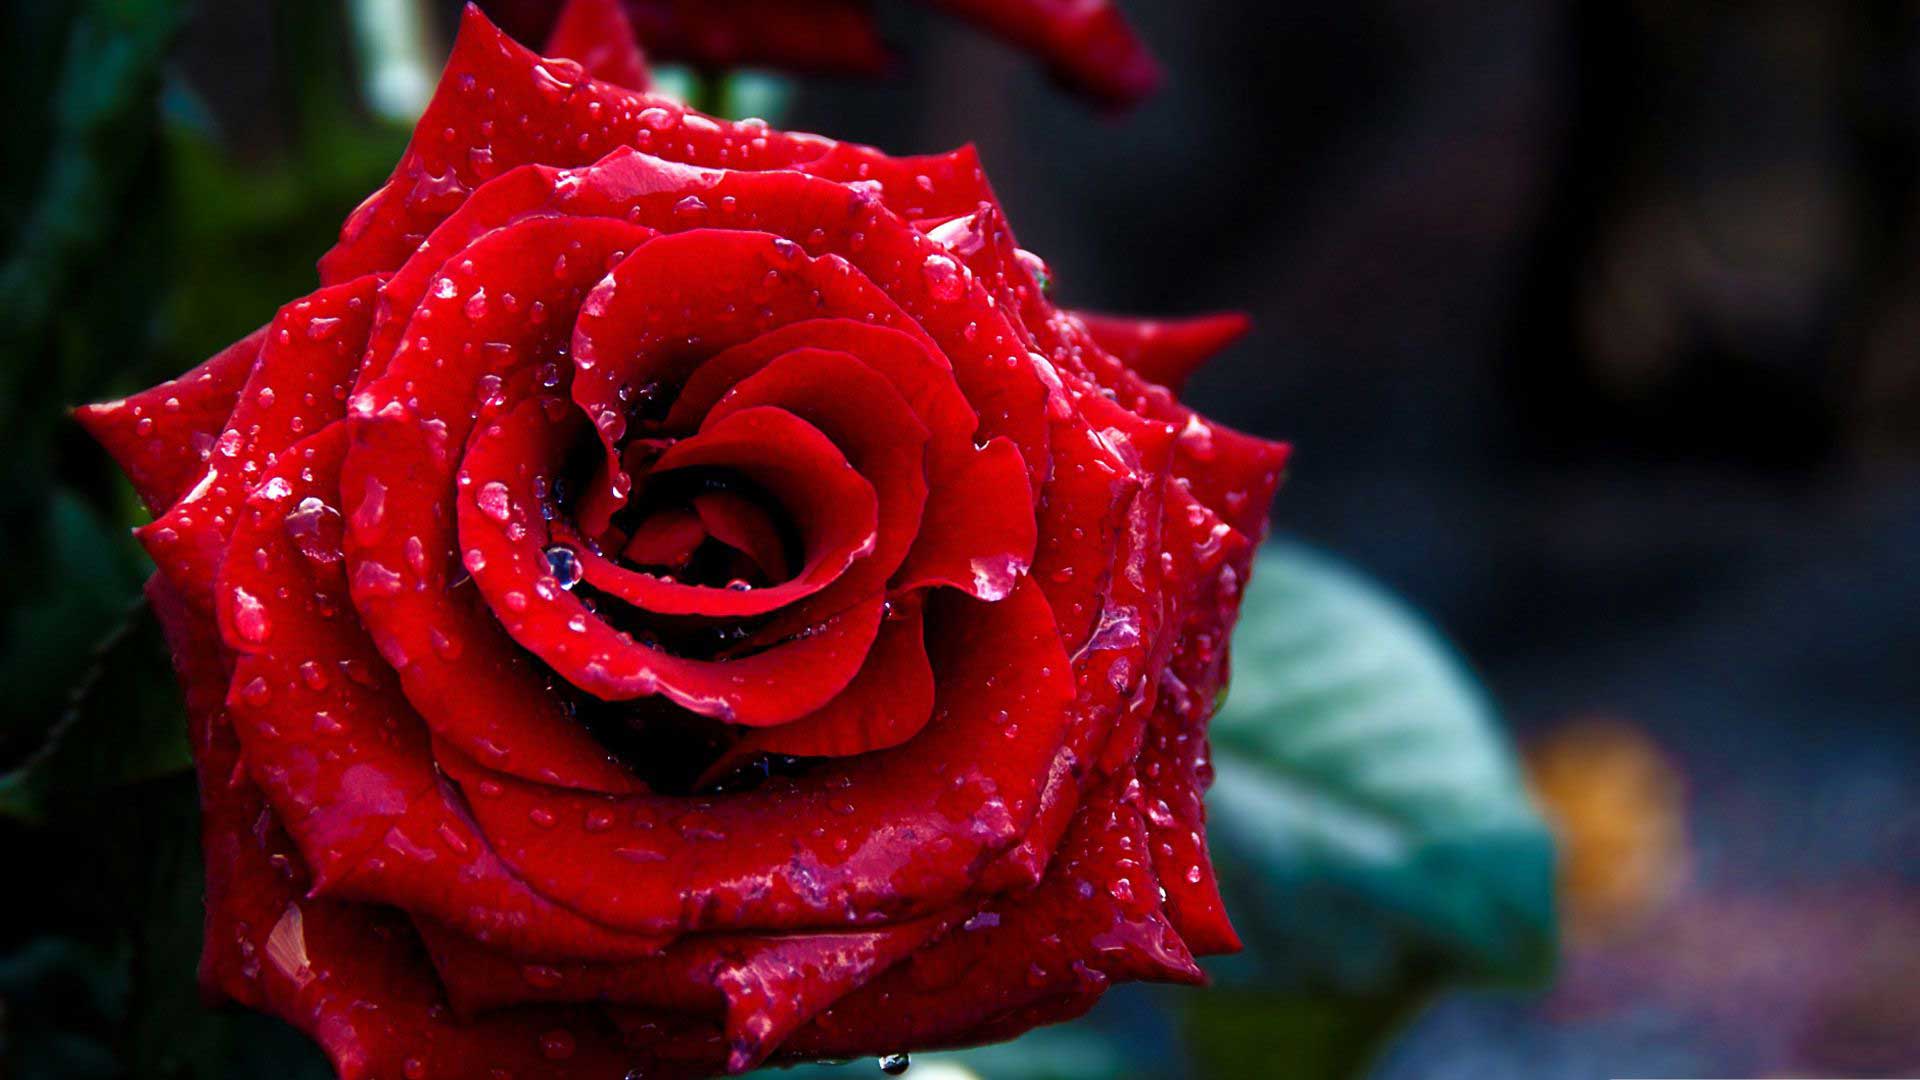 عکس گل رز قرمز با کیفیت بالا